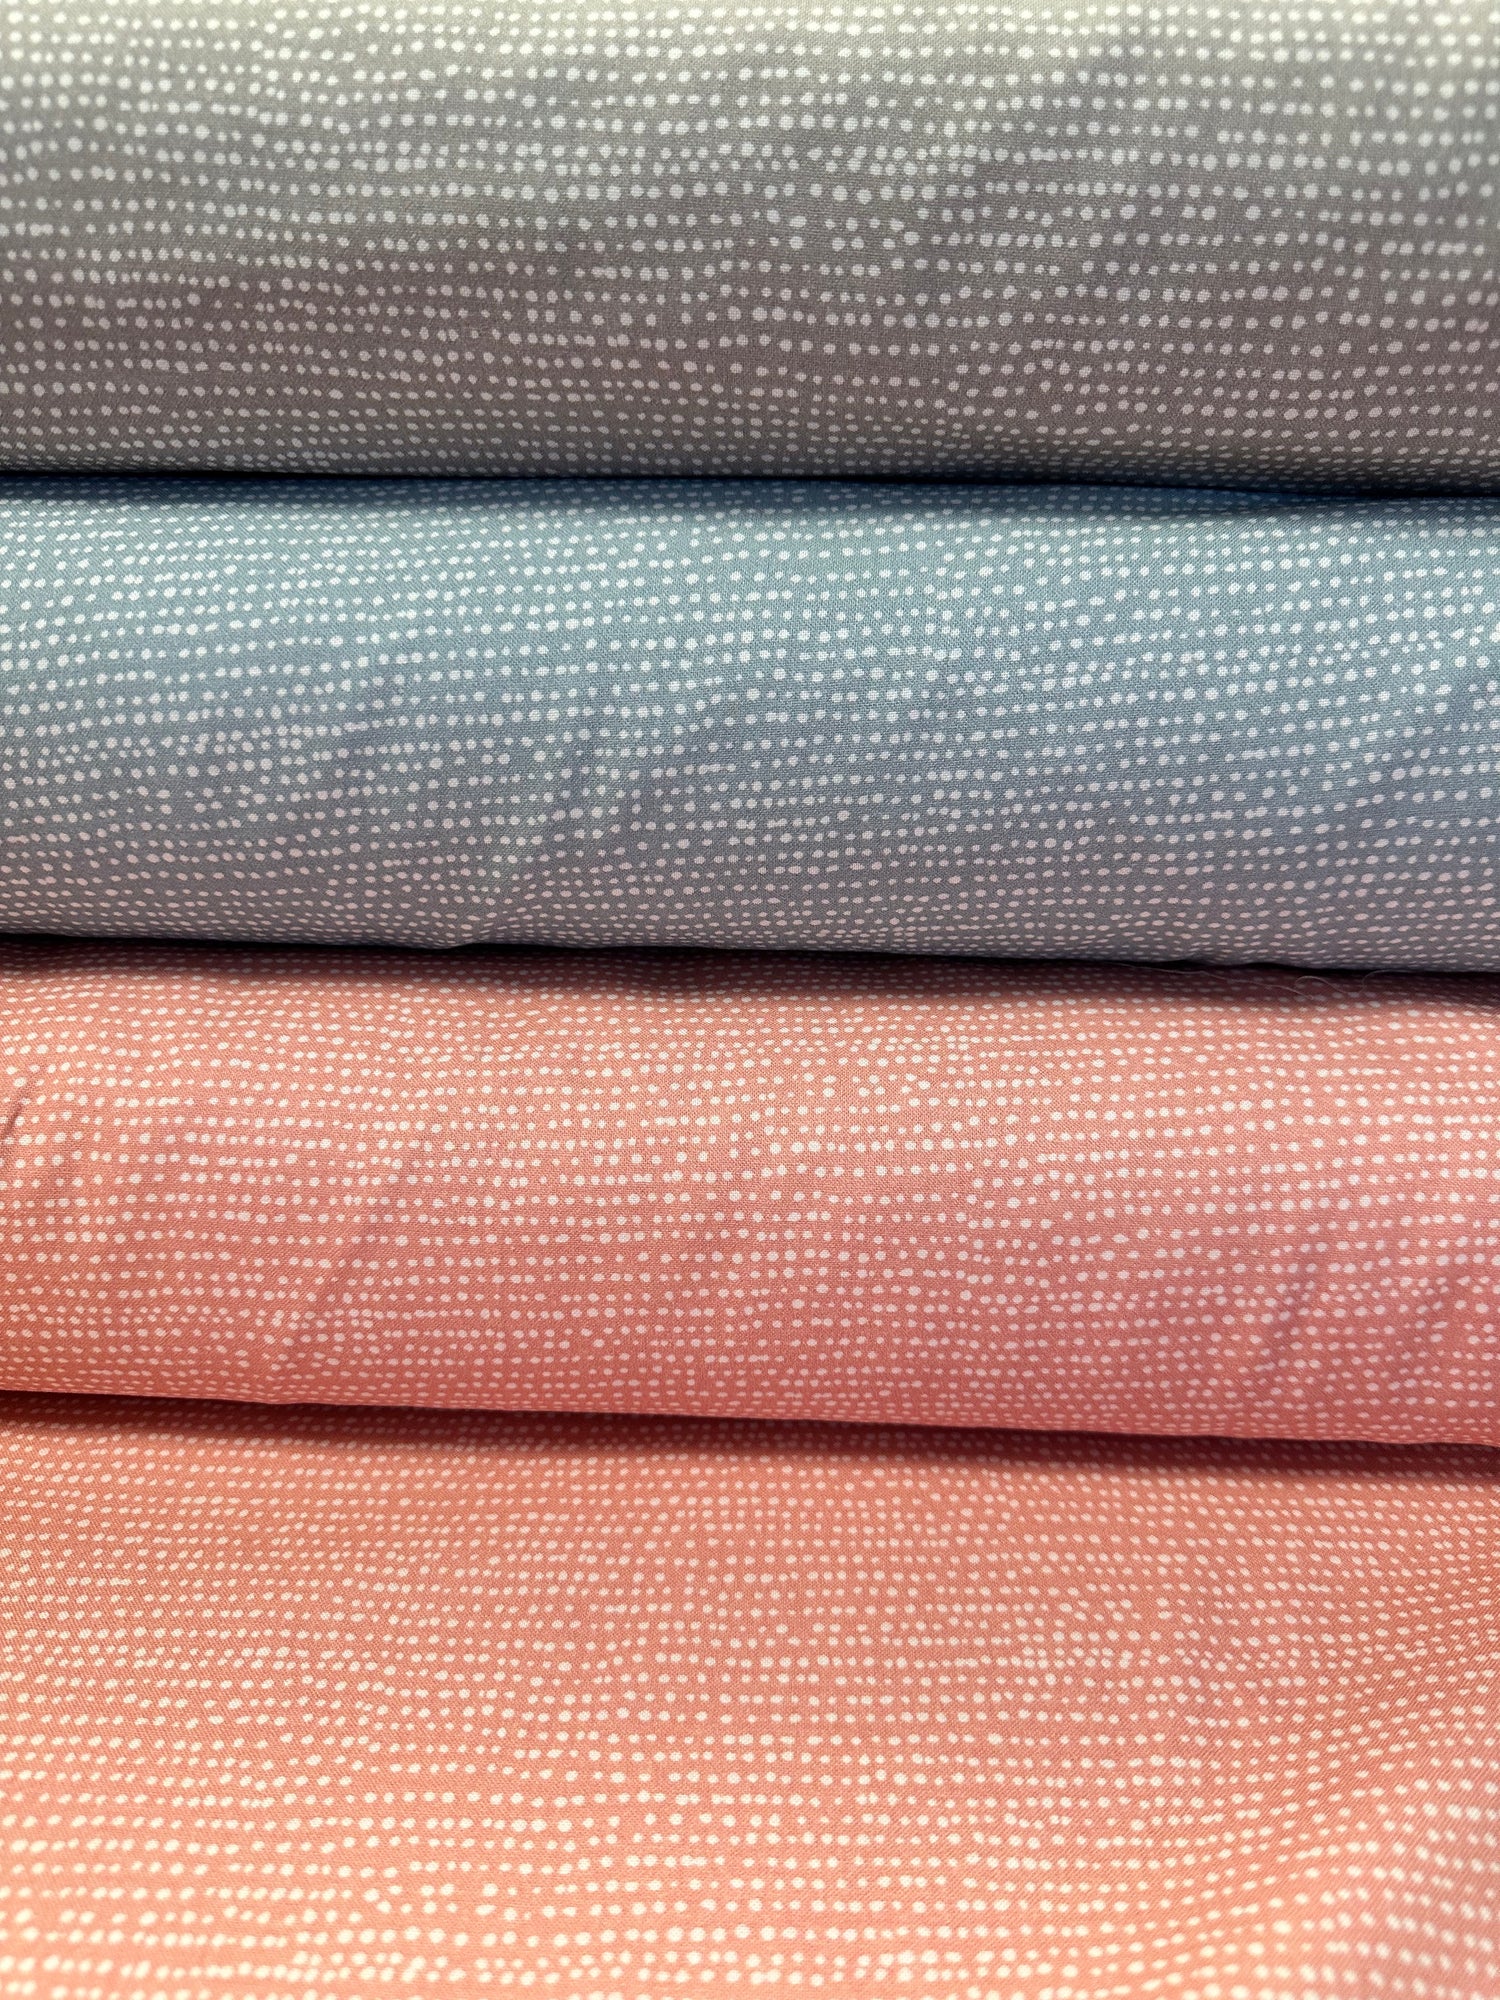 Fabric Remnant 19 X 44 Incognito Camo Fabric, STELLA-1724 Jungle, Dear  Stella Fabric, 100% Cotton, R-467 -  Canada